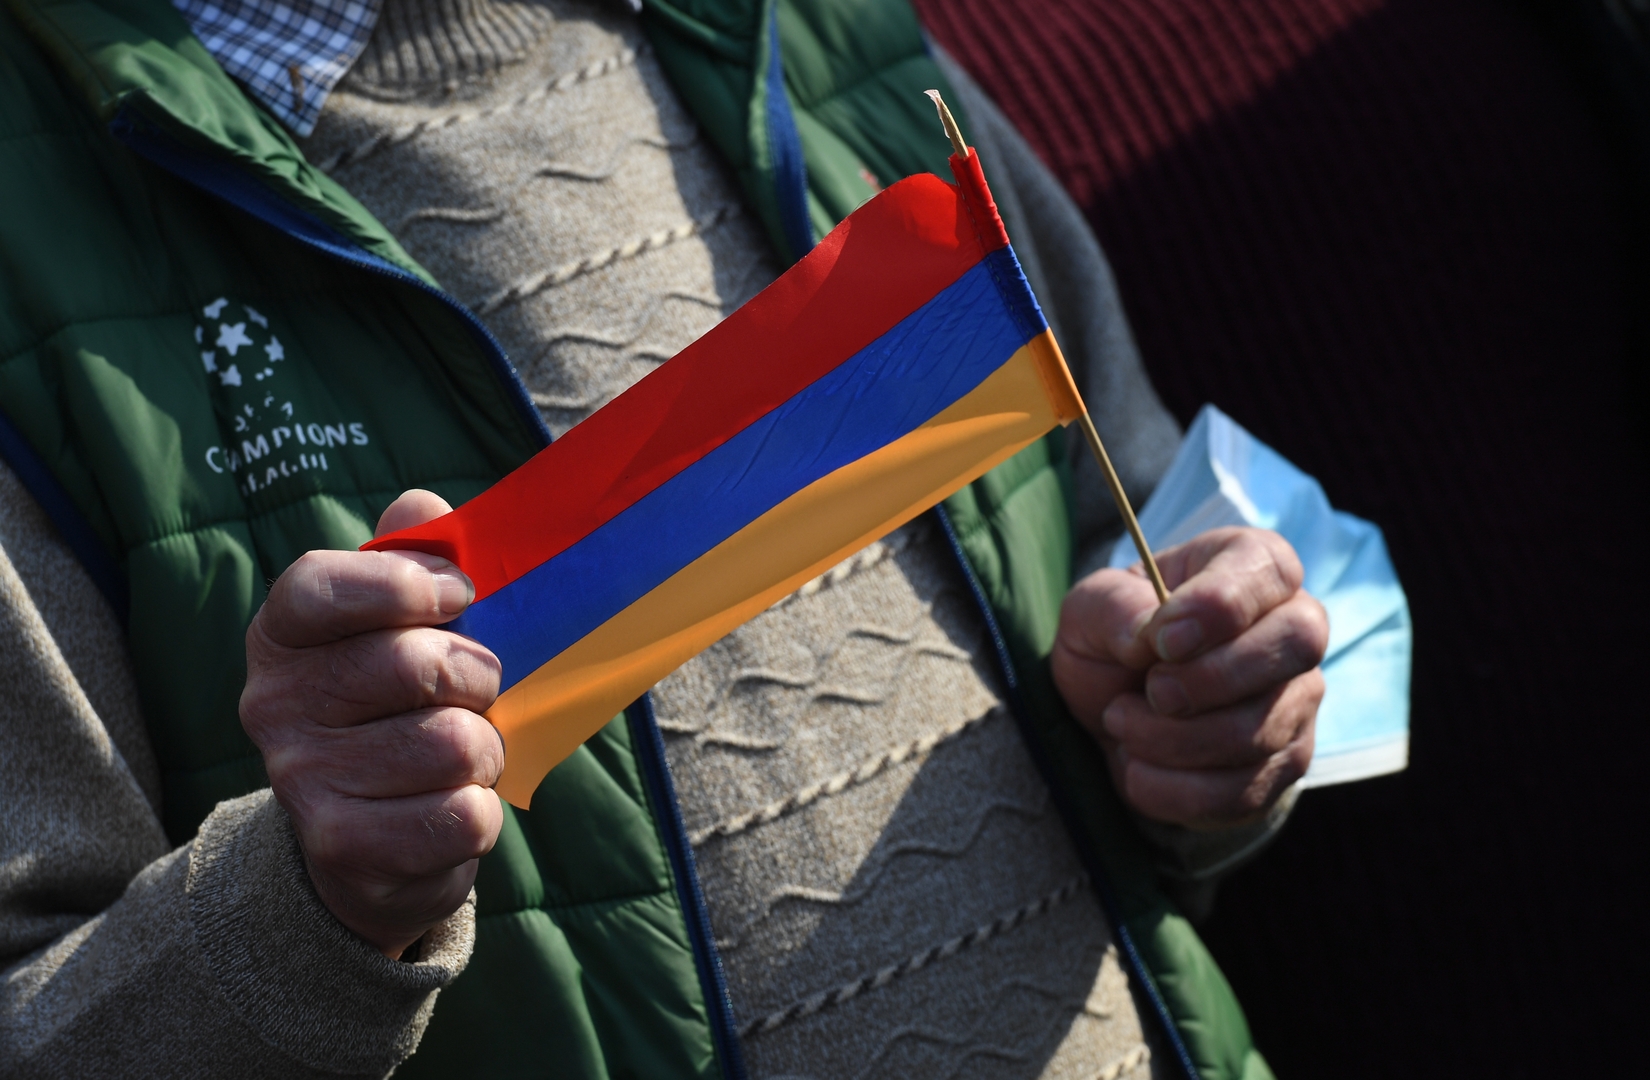 الرئيس الأرمني يرفض طلب باشينيان إقالة قائد الأركان